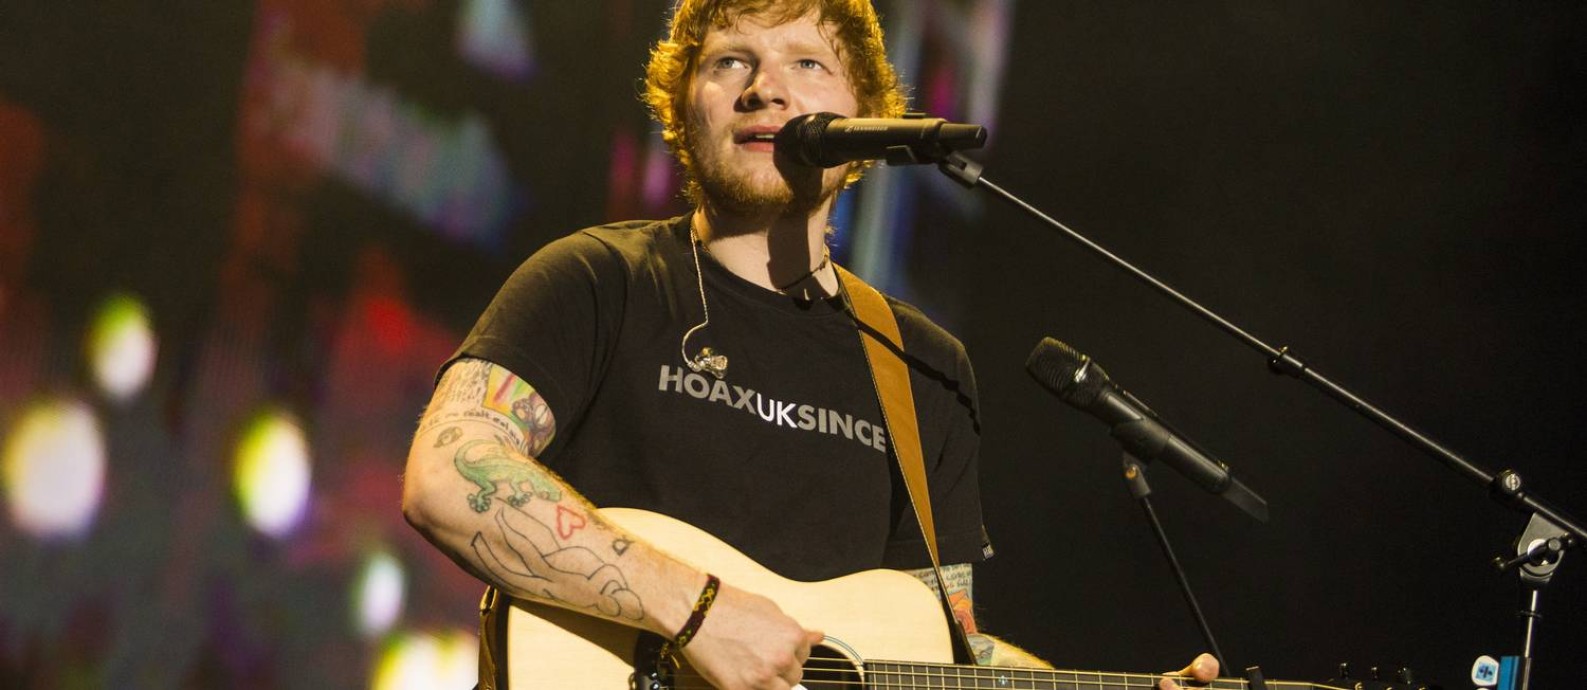 O cantor inglês Ed Sheeran em show na Jeunesse Arena, Rio de Janeiro, em 25/05/2017 Foto: Bárbara Lopes / Agência O Globo